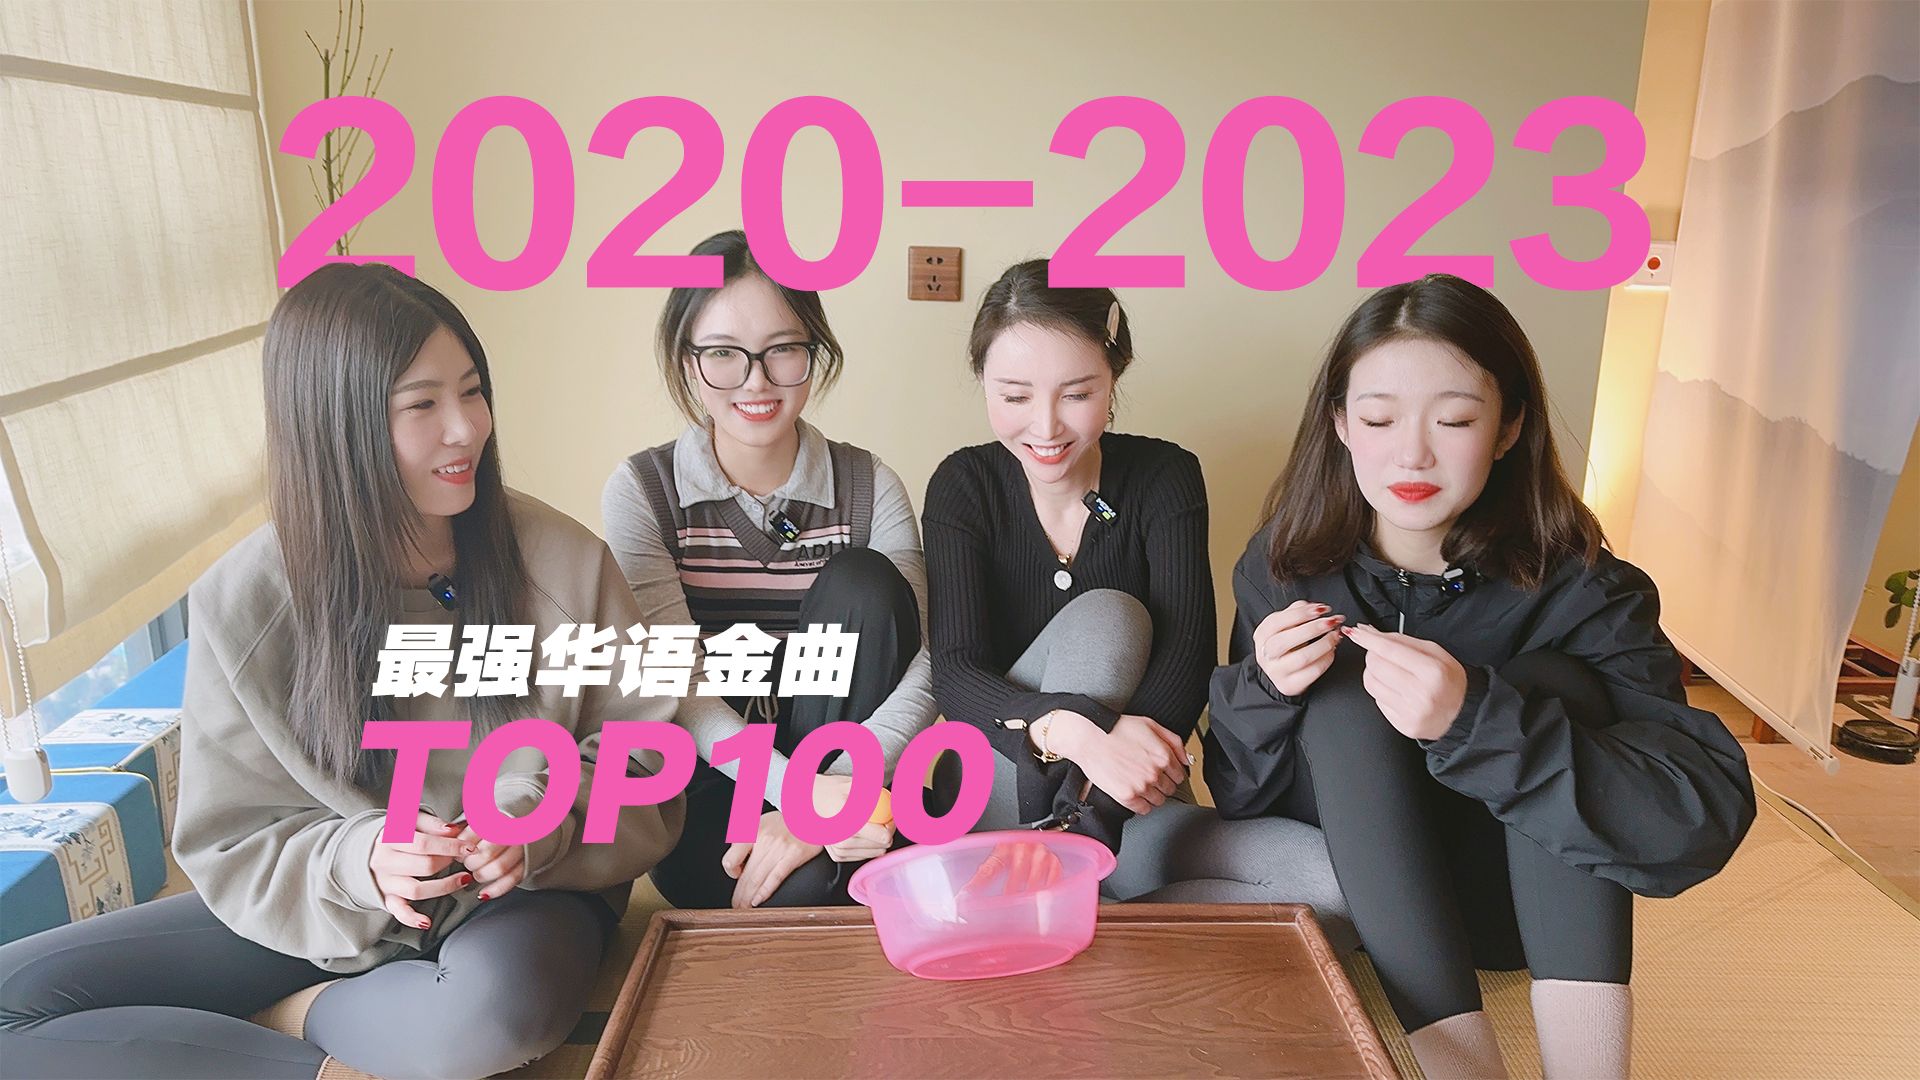 猜歌游戏【2020-2023最强华语金曲TOP100】（上）近三年的新歌赏析